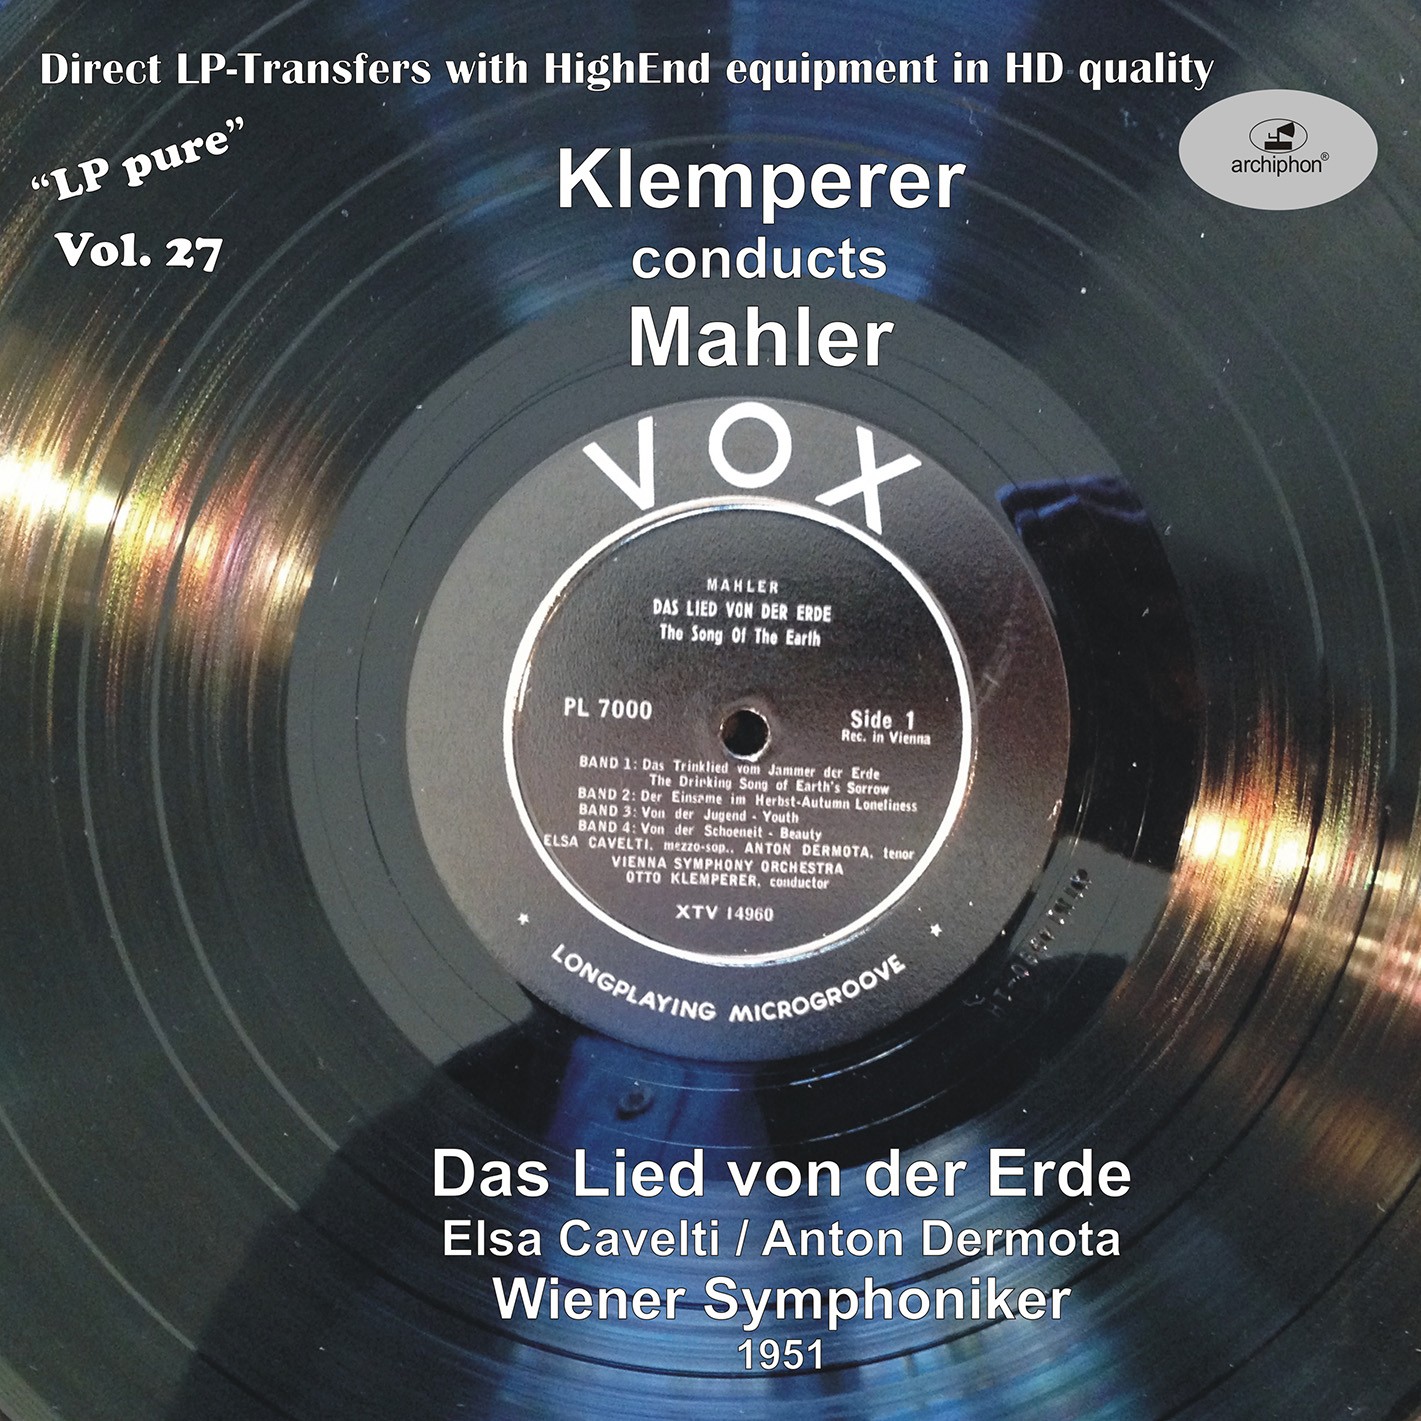 Anton Dermota, Elsa Cavelti, Wiener Symphoniker, Otto Klemperer - LP Pure, Vol. 27: Klemperer Conducts Mahler (1951/2016) [FLAC 24bit/96kHz] Download